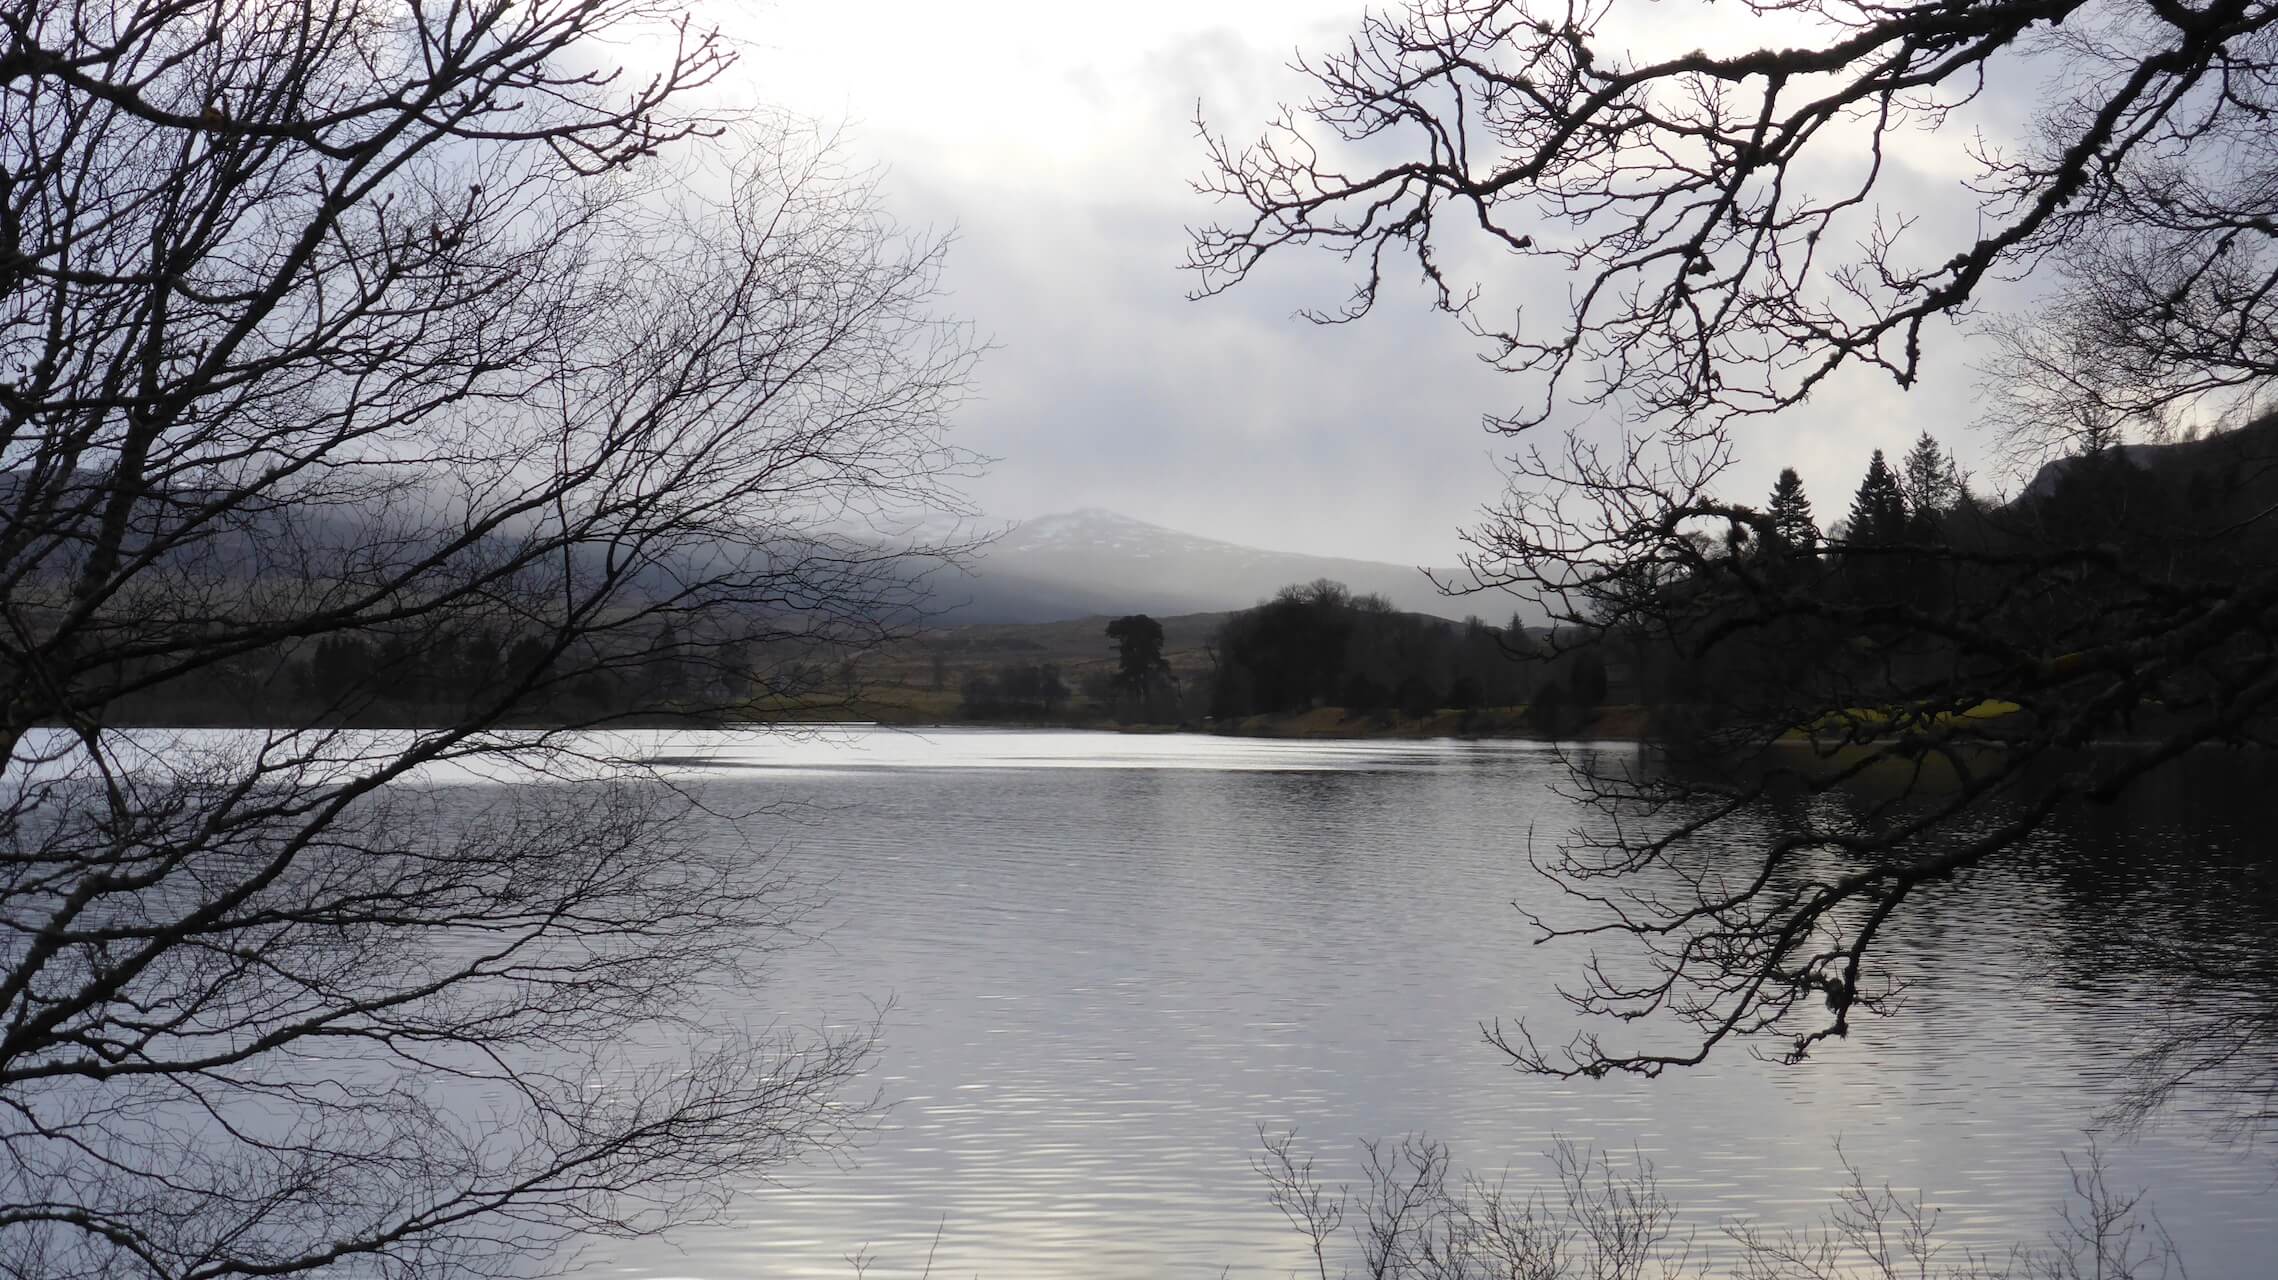 Loch Rannoch